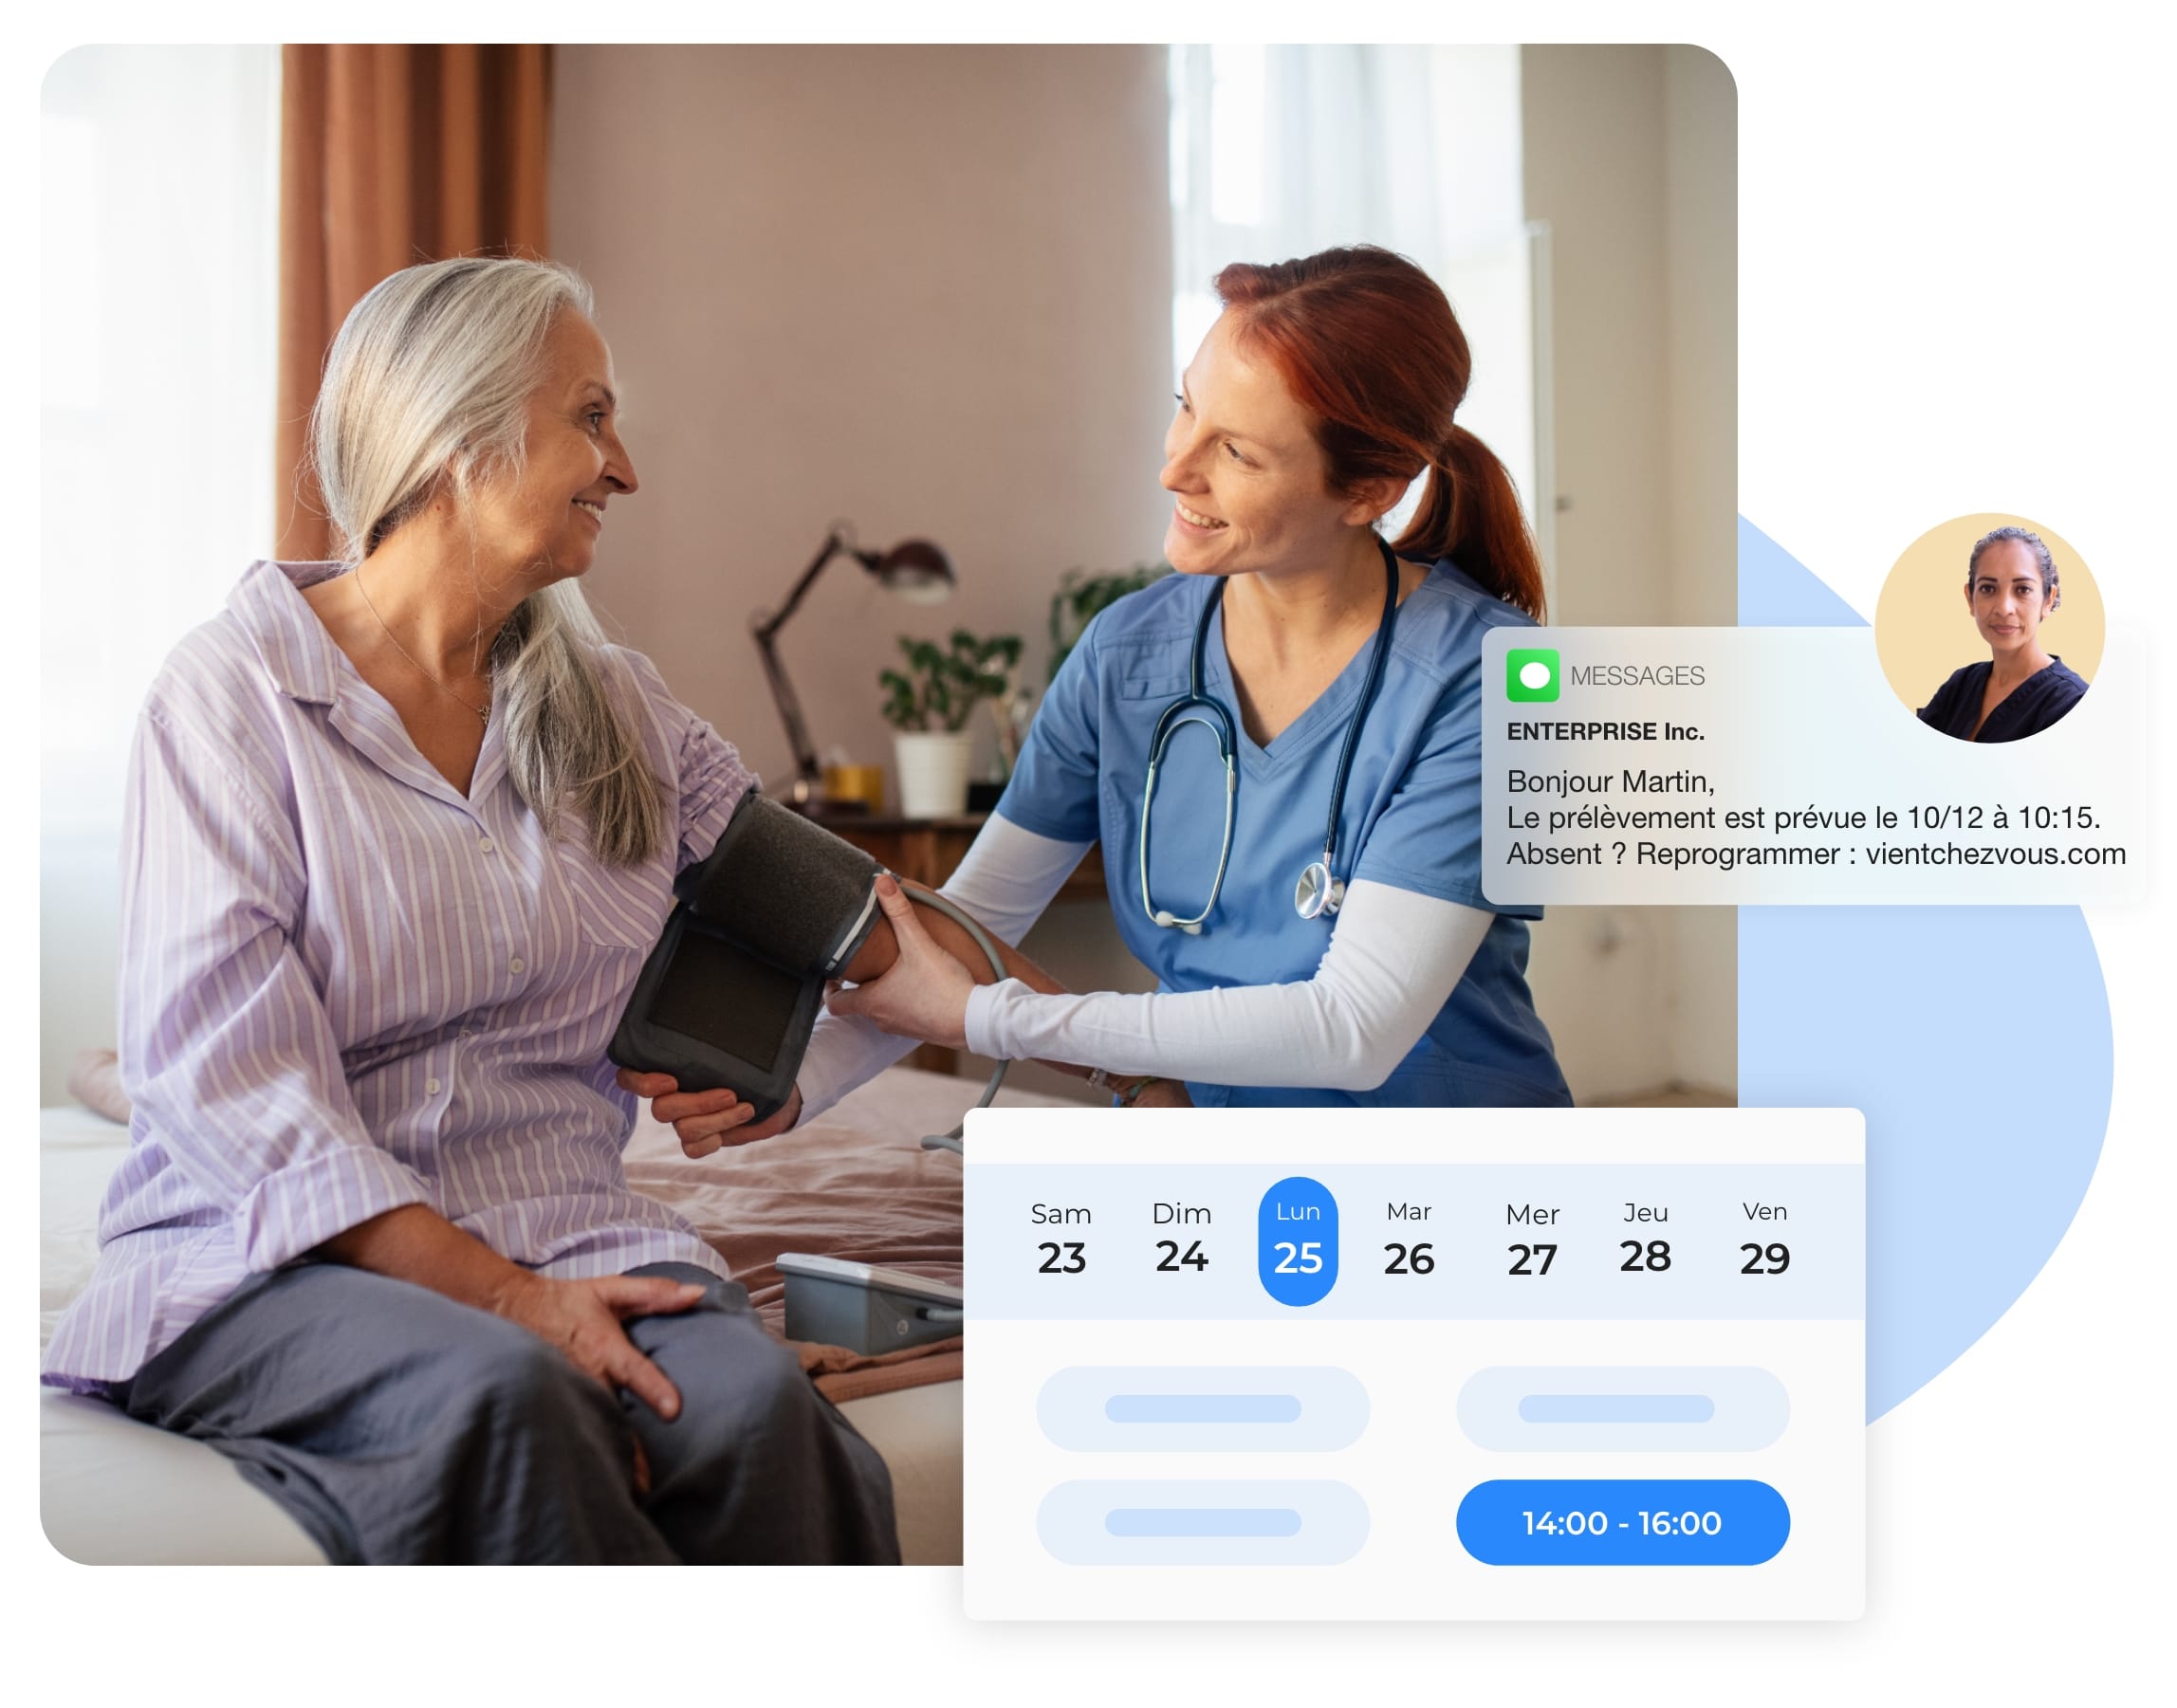 L’interface permet de proposer des soins de qualité aux patients.